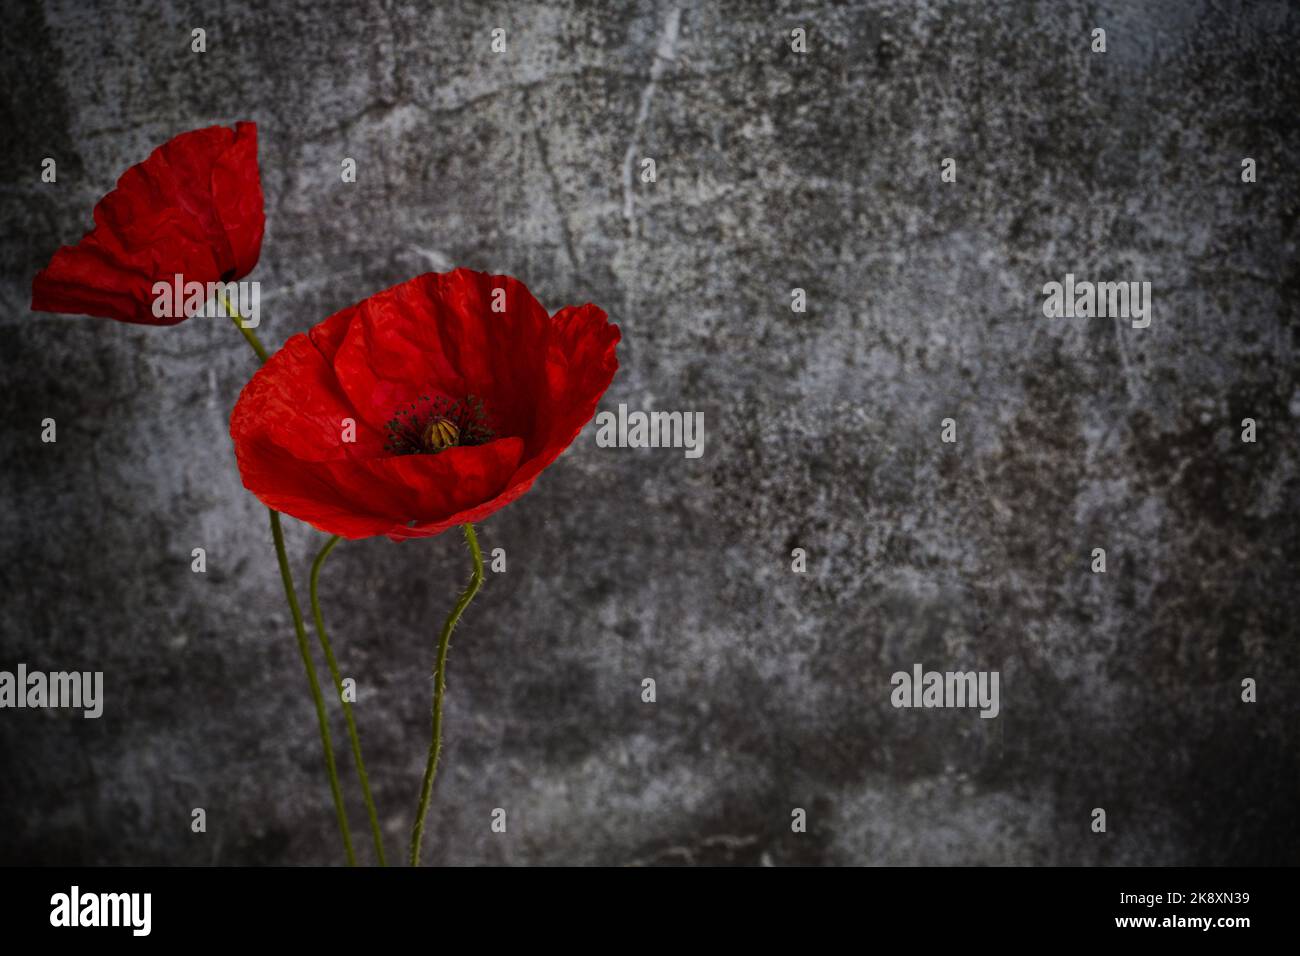 Día del recuerdo de la Guerra Mundial. La amapola roja es símbolo